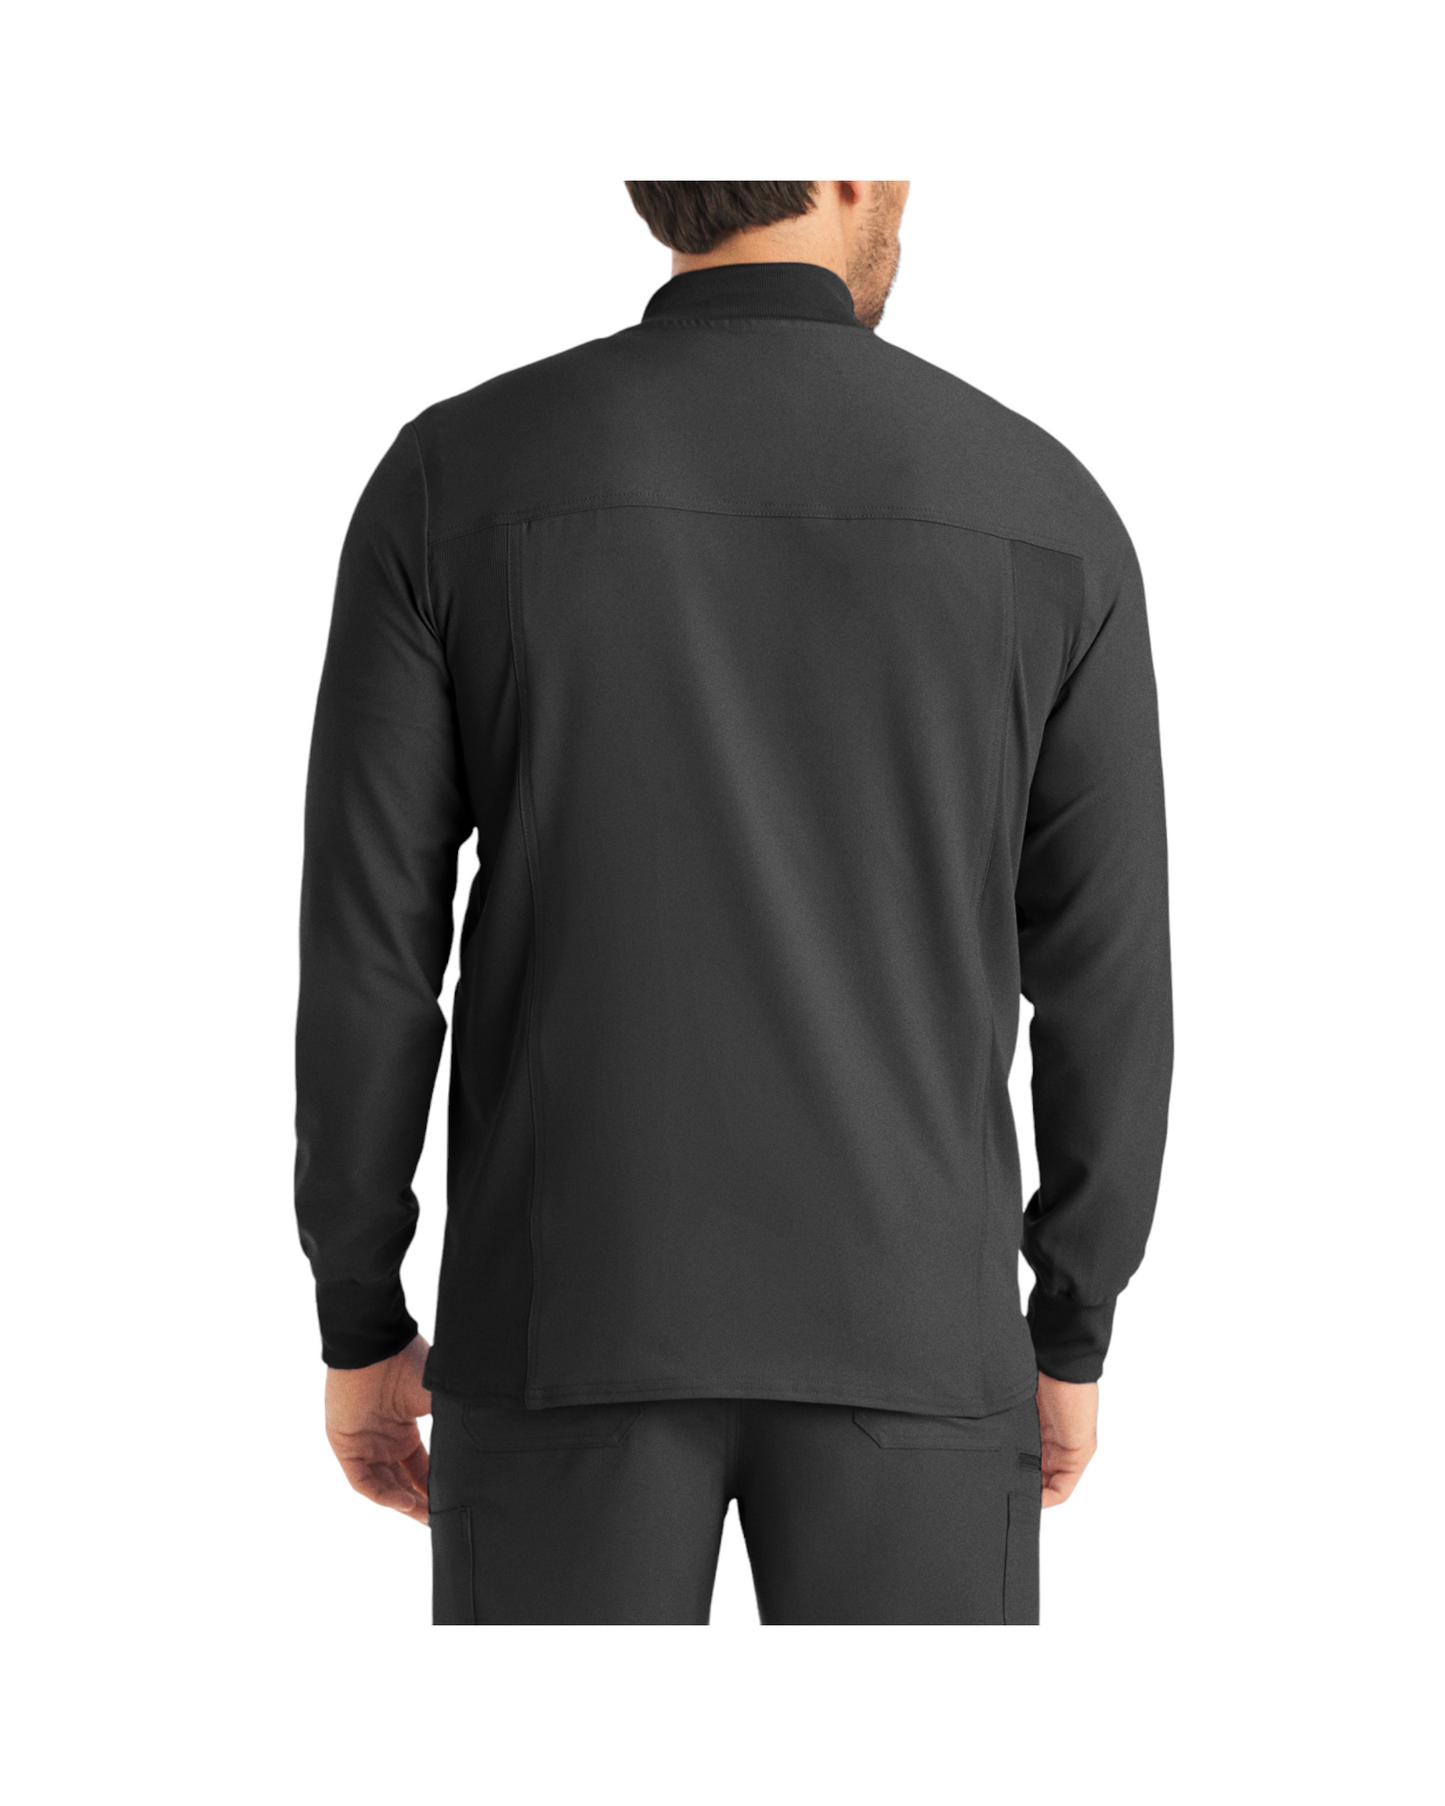 Vue de dos de la veste de survêtement pour hommes à fermeture éclair Landau Forward #LJ703 OS couleur Pewter